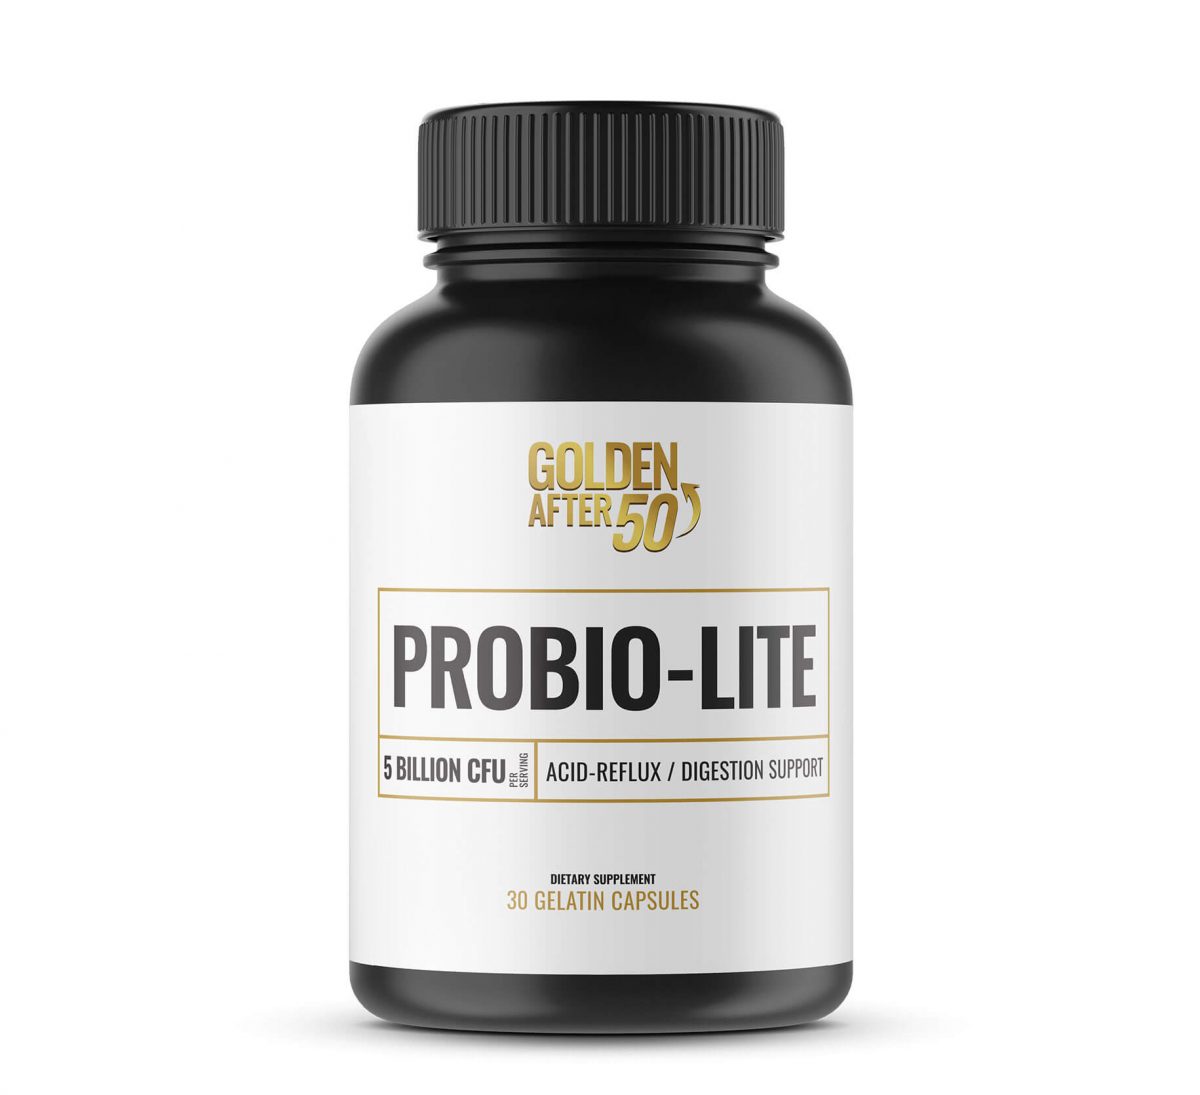 ProbioLite Review – Acid Reflux Treatment & Heartburn Relief